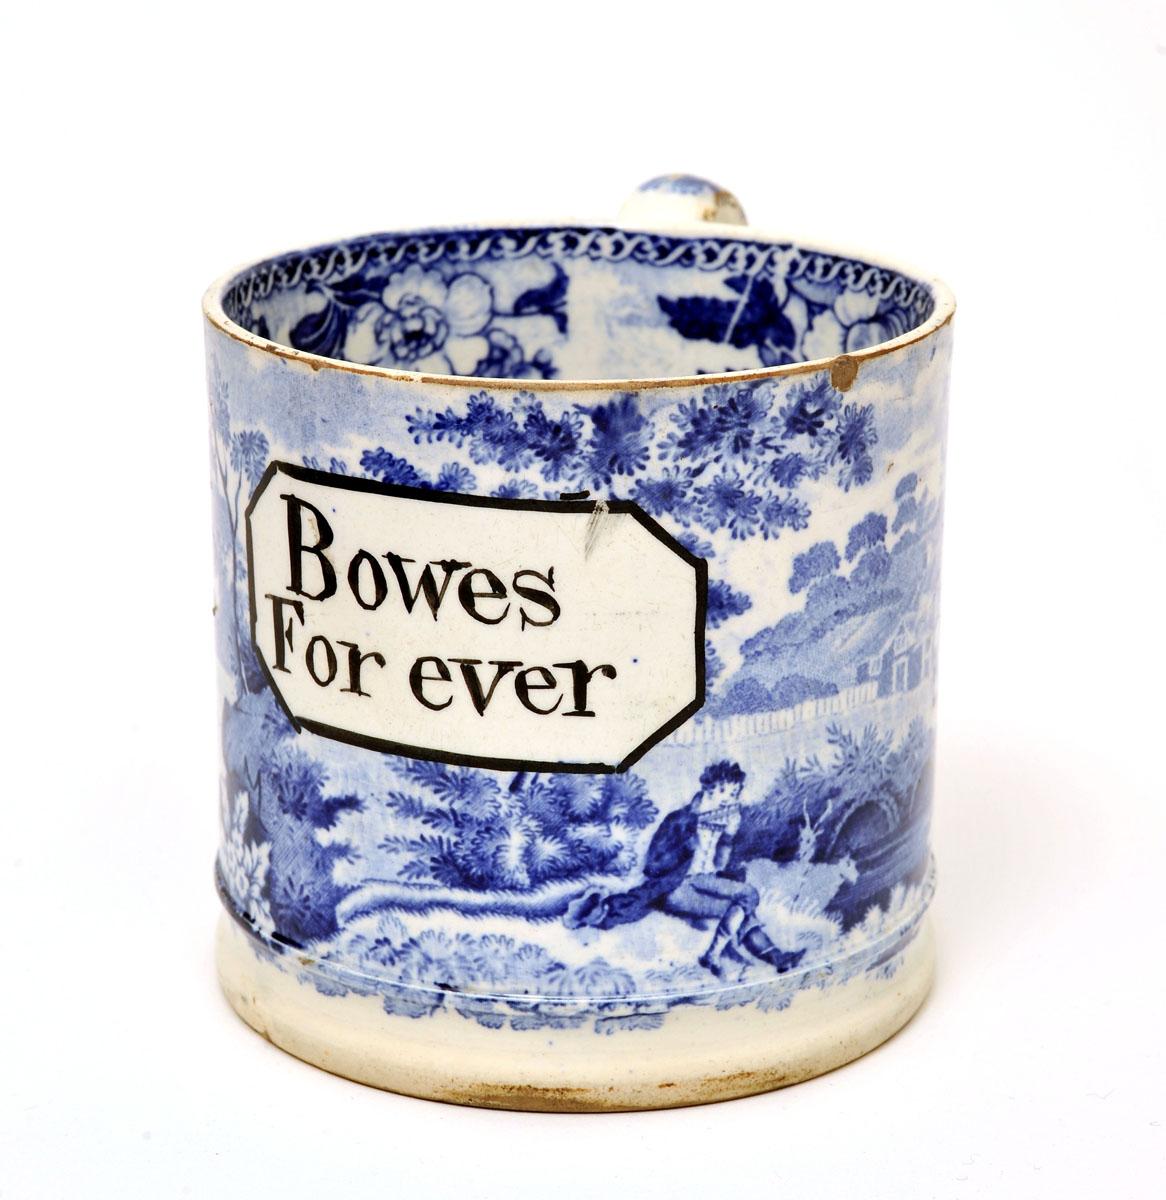 Local Pottery ‘Bowes For ever’ Mug